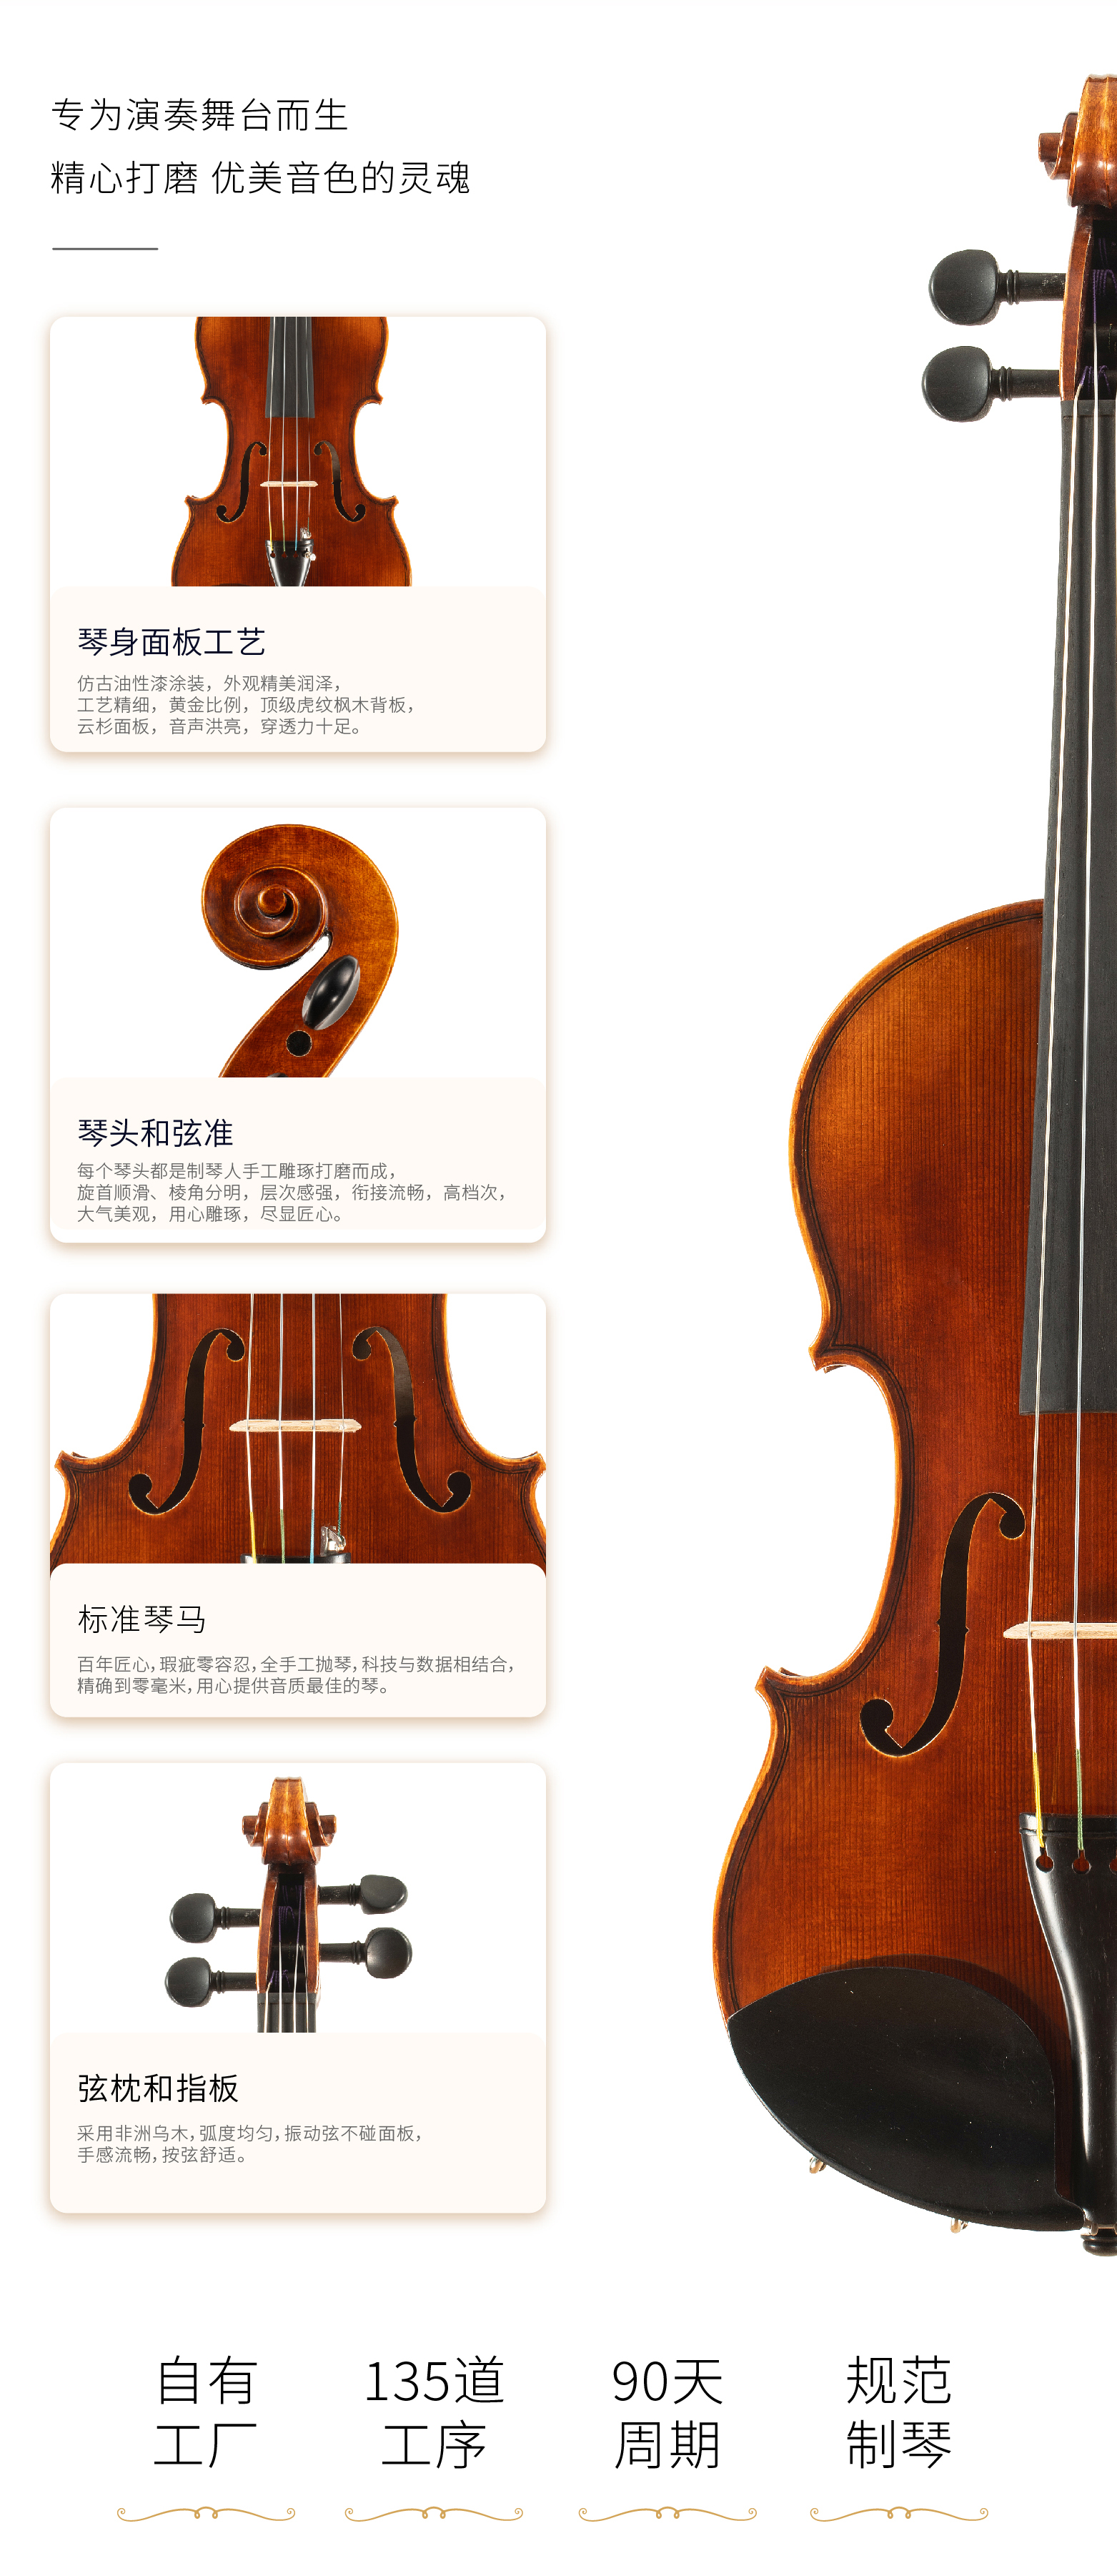 熙珑乐器专营店-详情-v1-2_SV580小提琴_复制_PC-副本-2_07.jpg